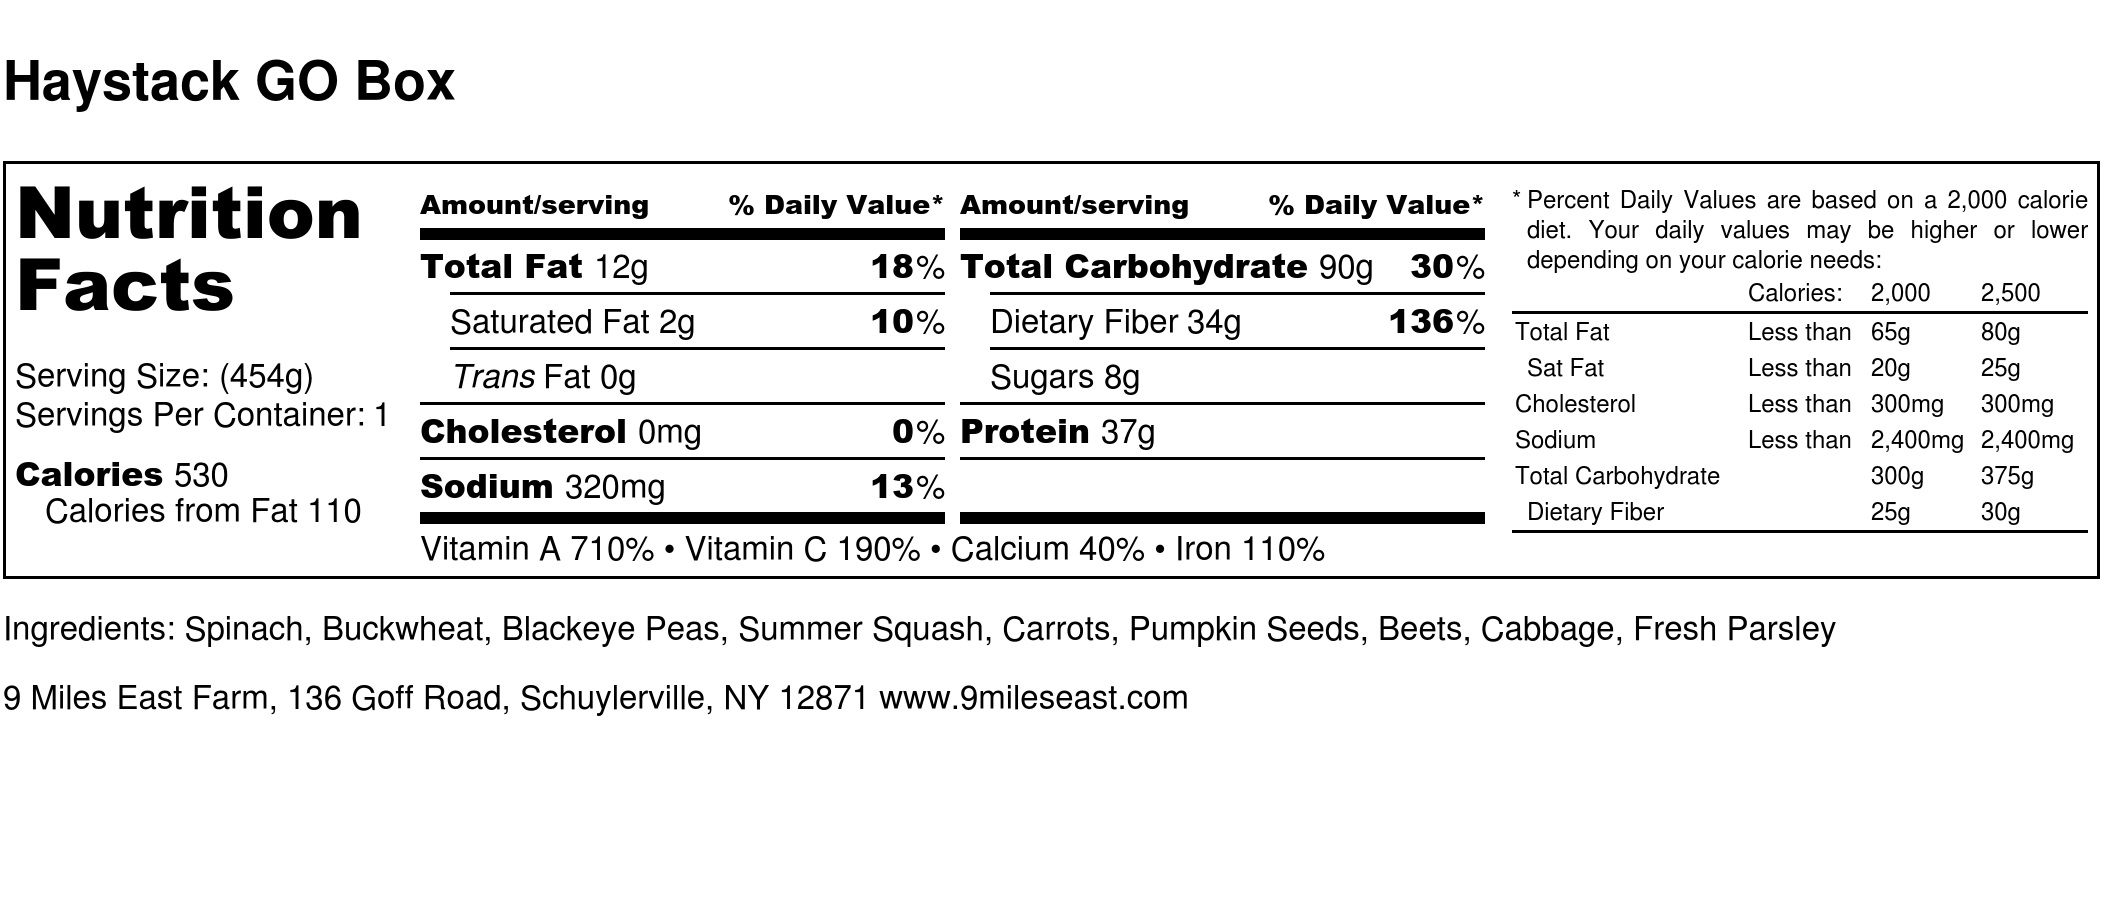 Haystack GO Box - Nutrition Label.jpg